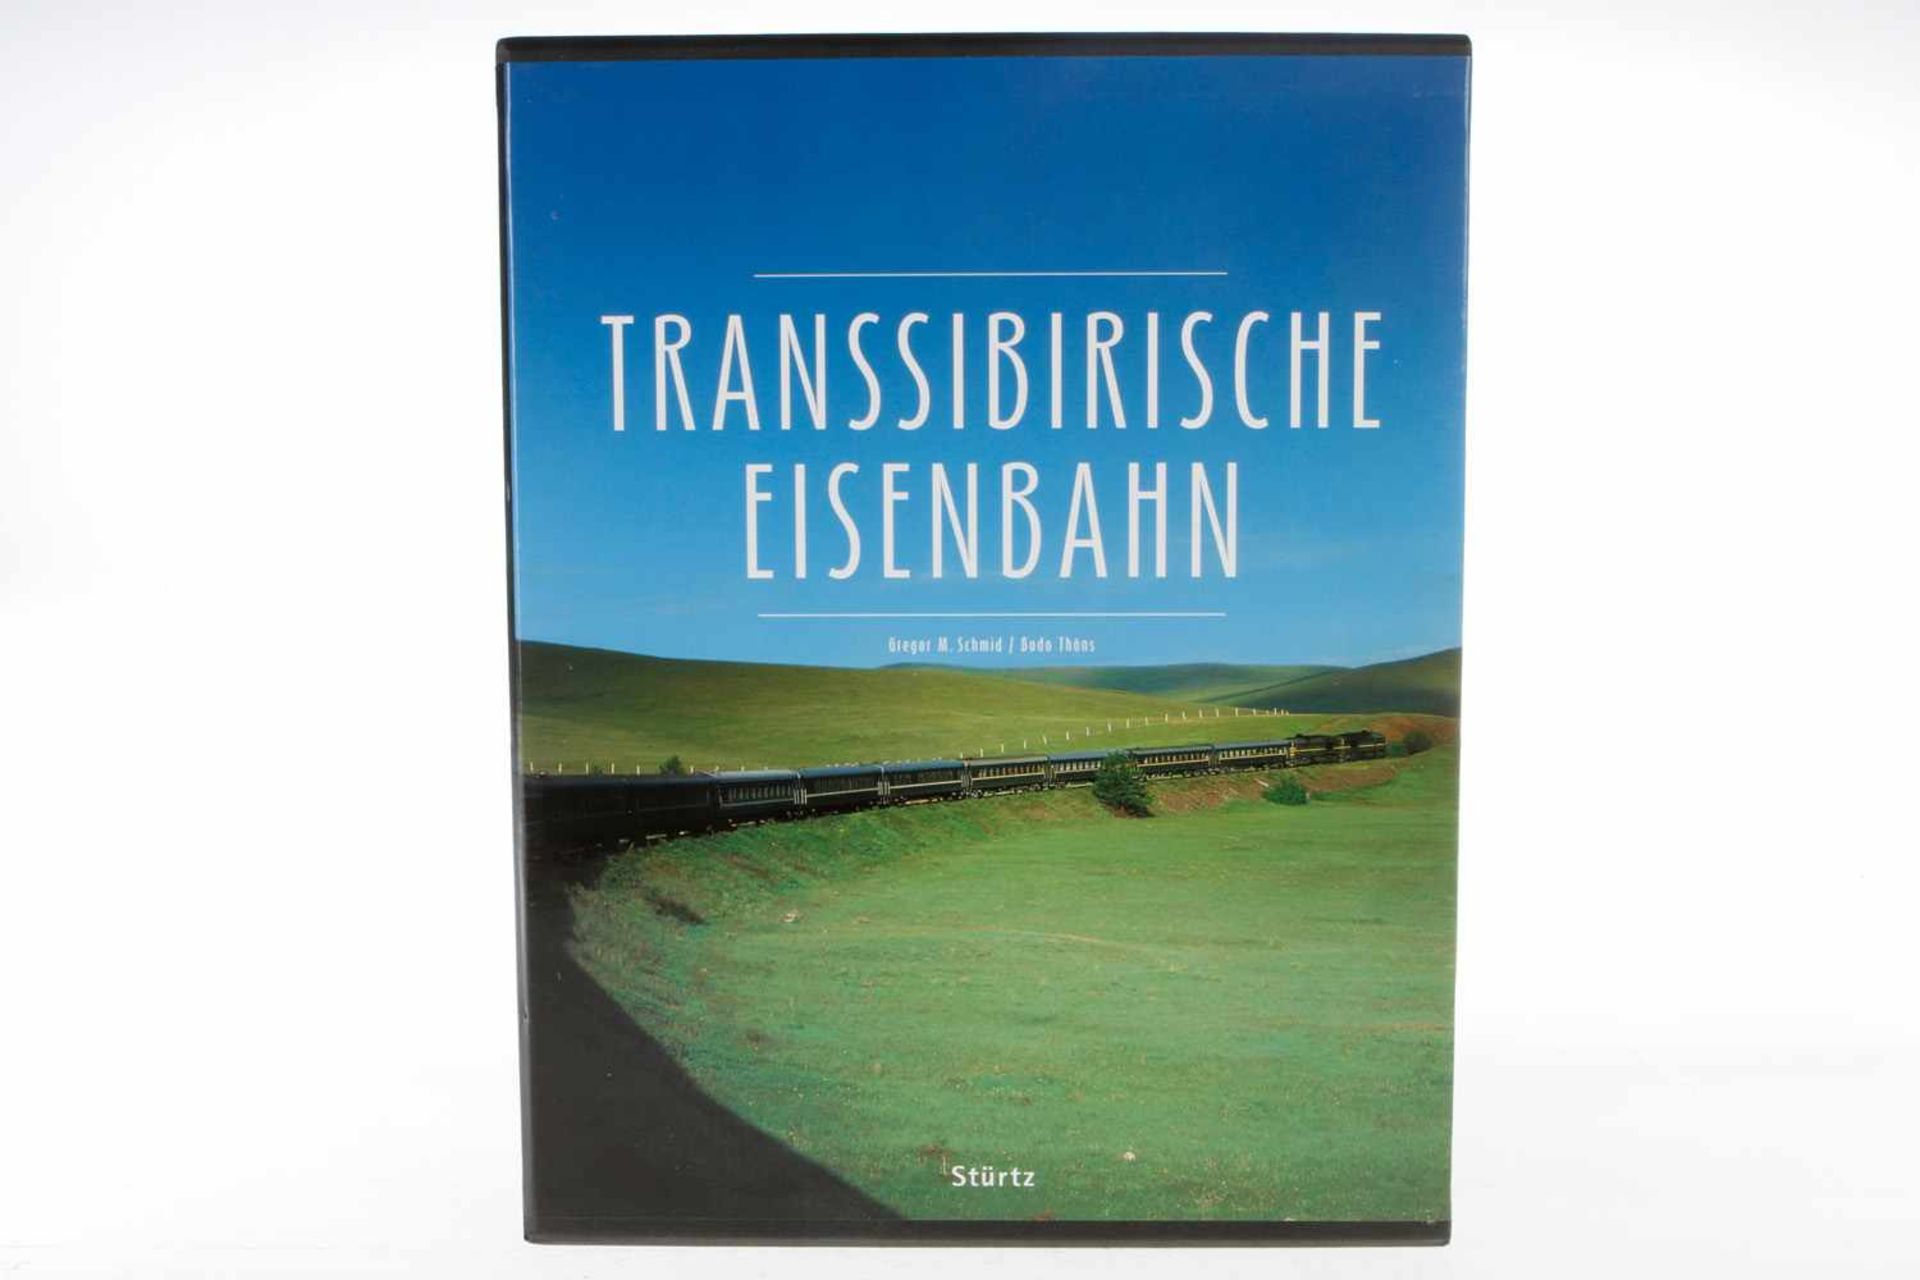 Buch "Transsibirische Eisenbahn", 2005, 224 Seiten, im Schuber